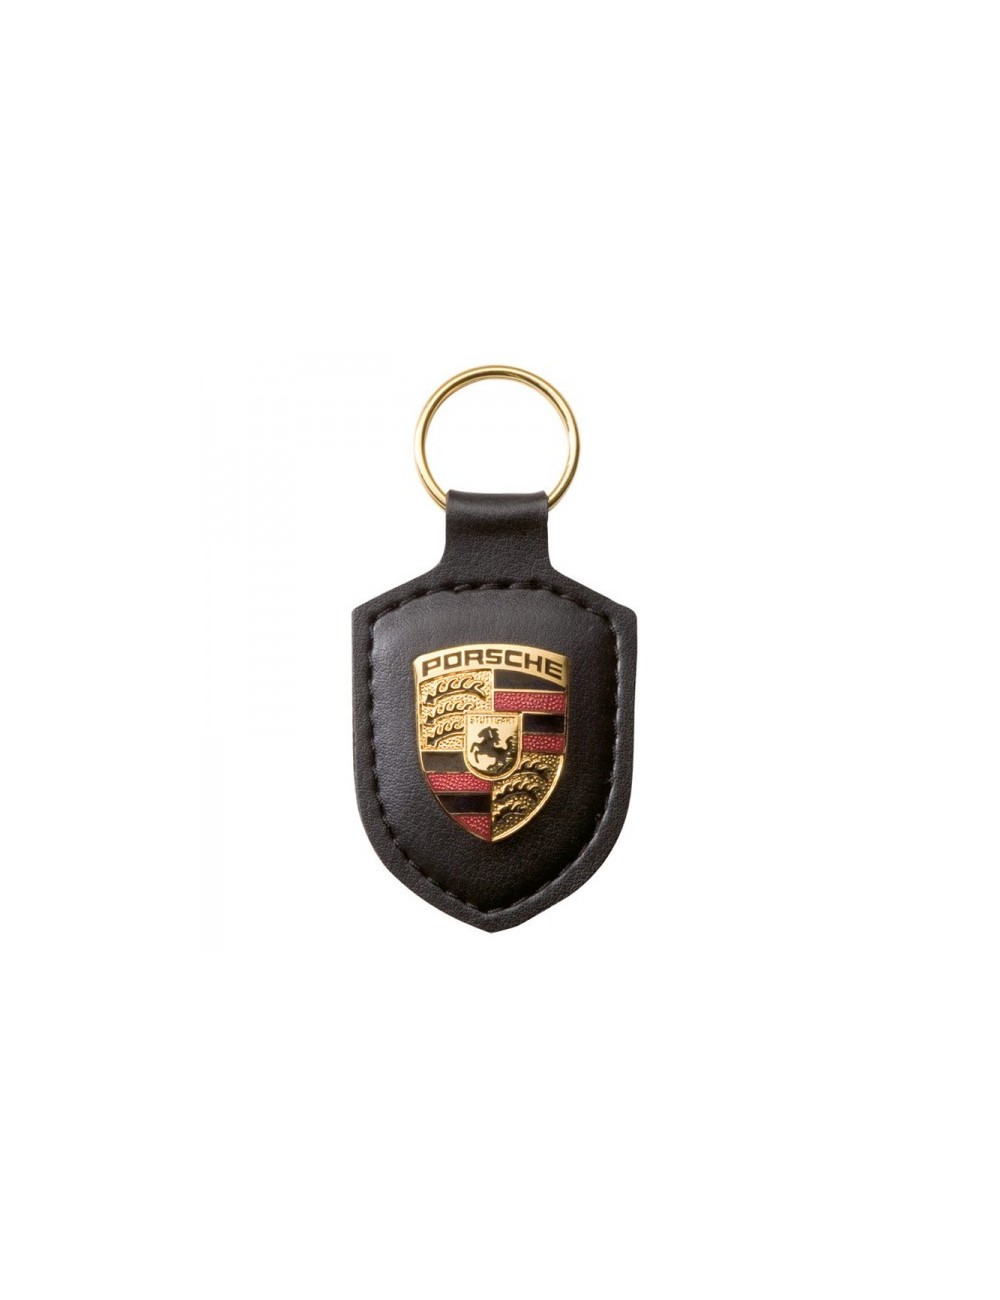 Porte clef Porsche noir 